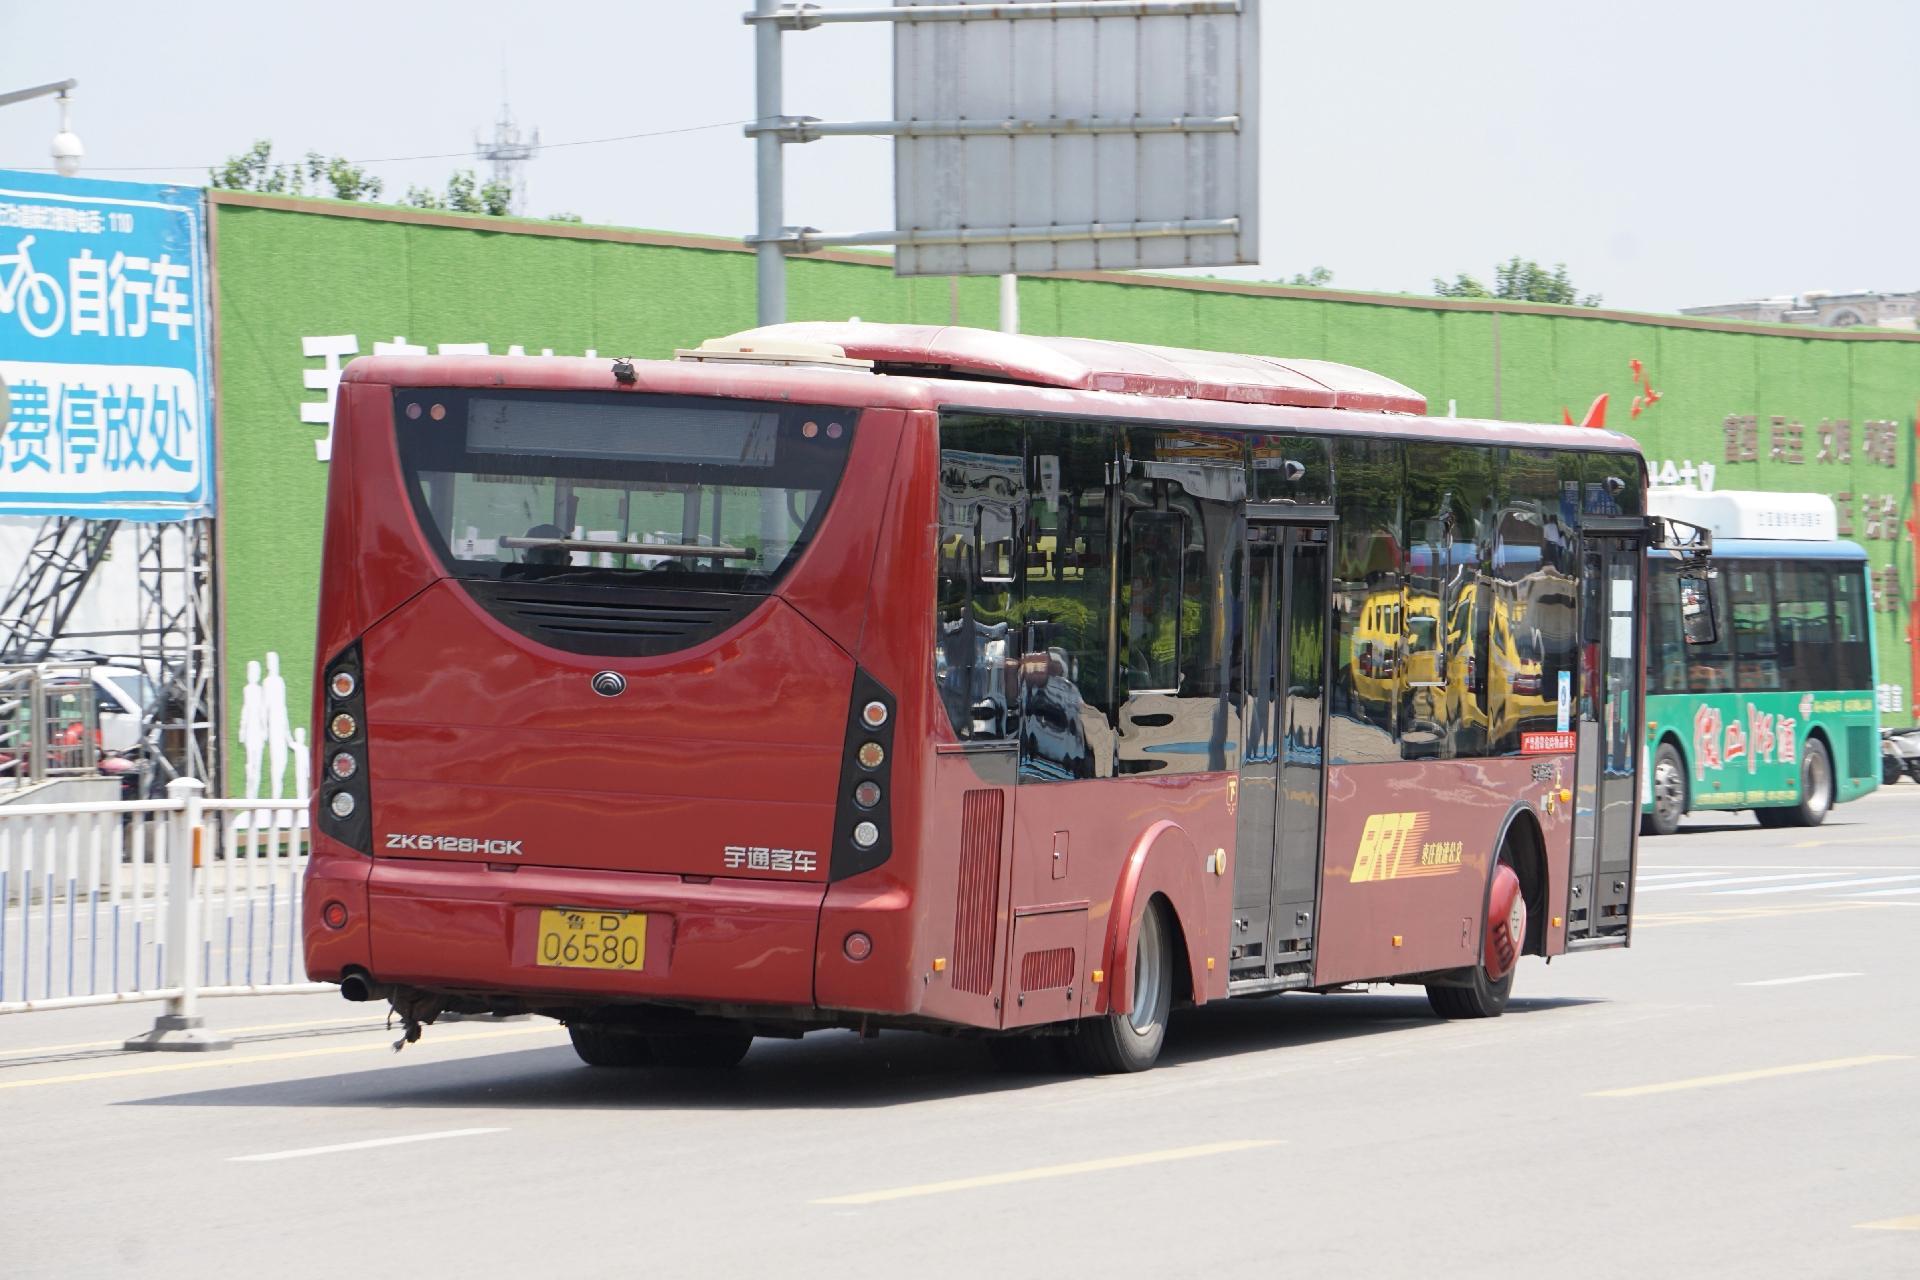 枣庄公交brt上线运营12年的宇通zk6128hgk,一代神车,即将落幕